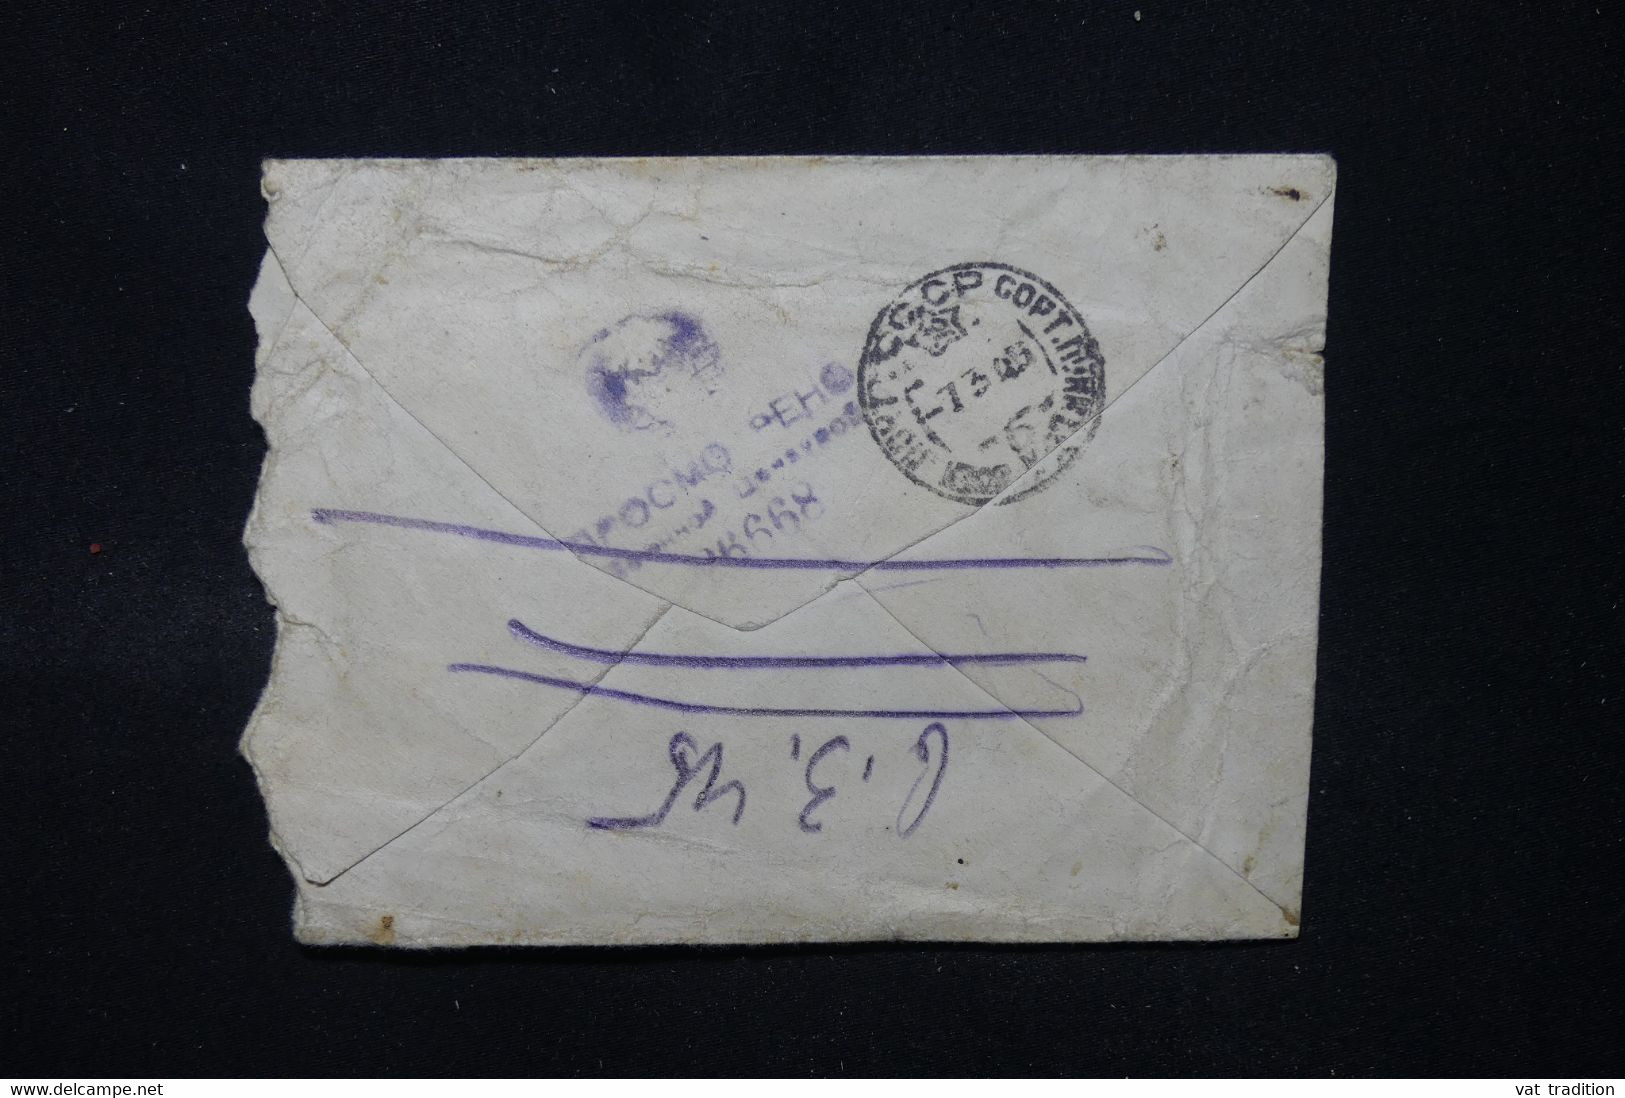 U.R.S.S. - Enveloppe Voyagée En 1945 En Franchise, Voir Cachet Au Verso - L 112536 - Lettres & Documents